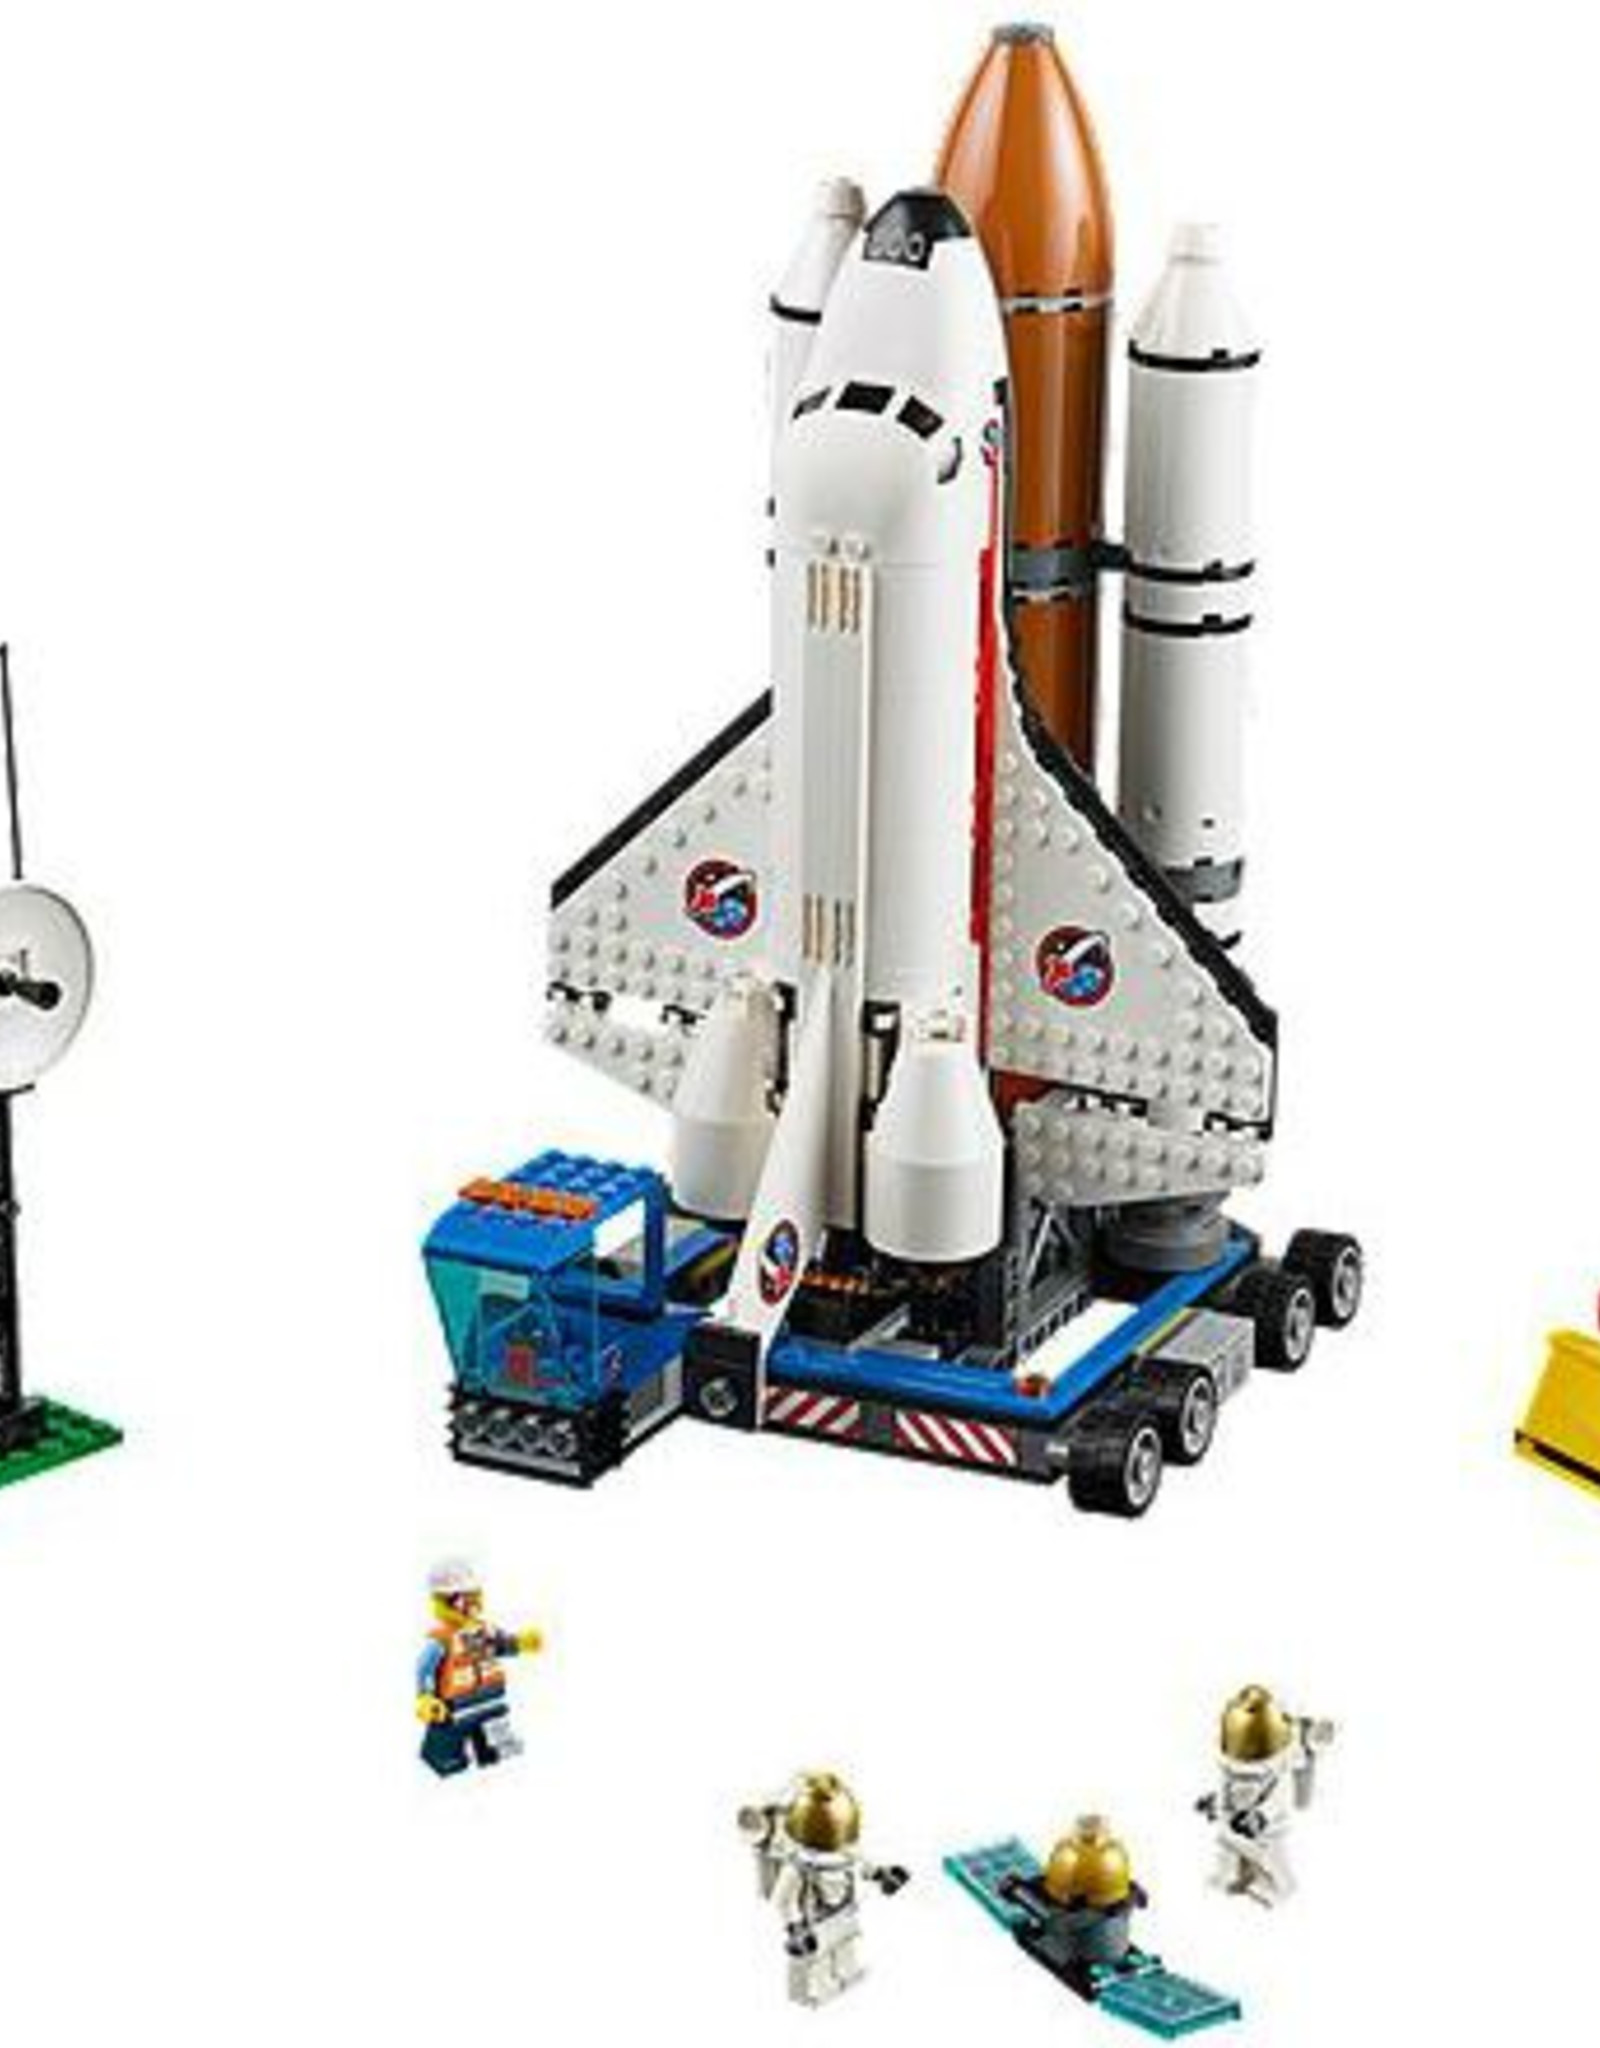 LEGO LEGO 60080 Spaceport CITY